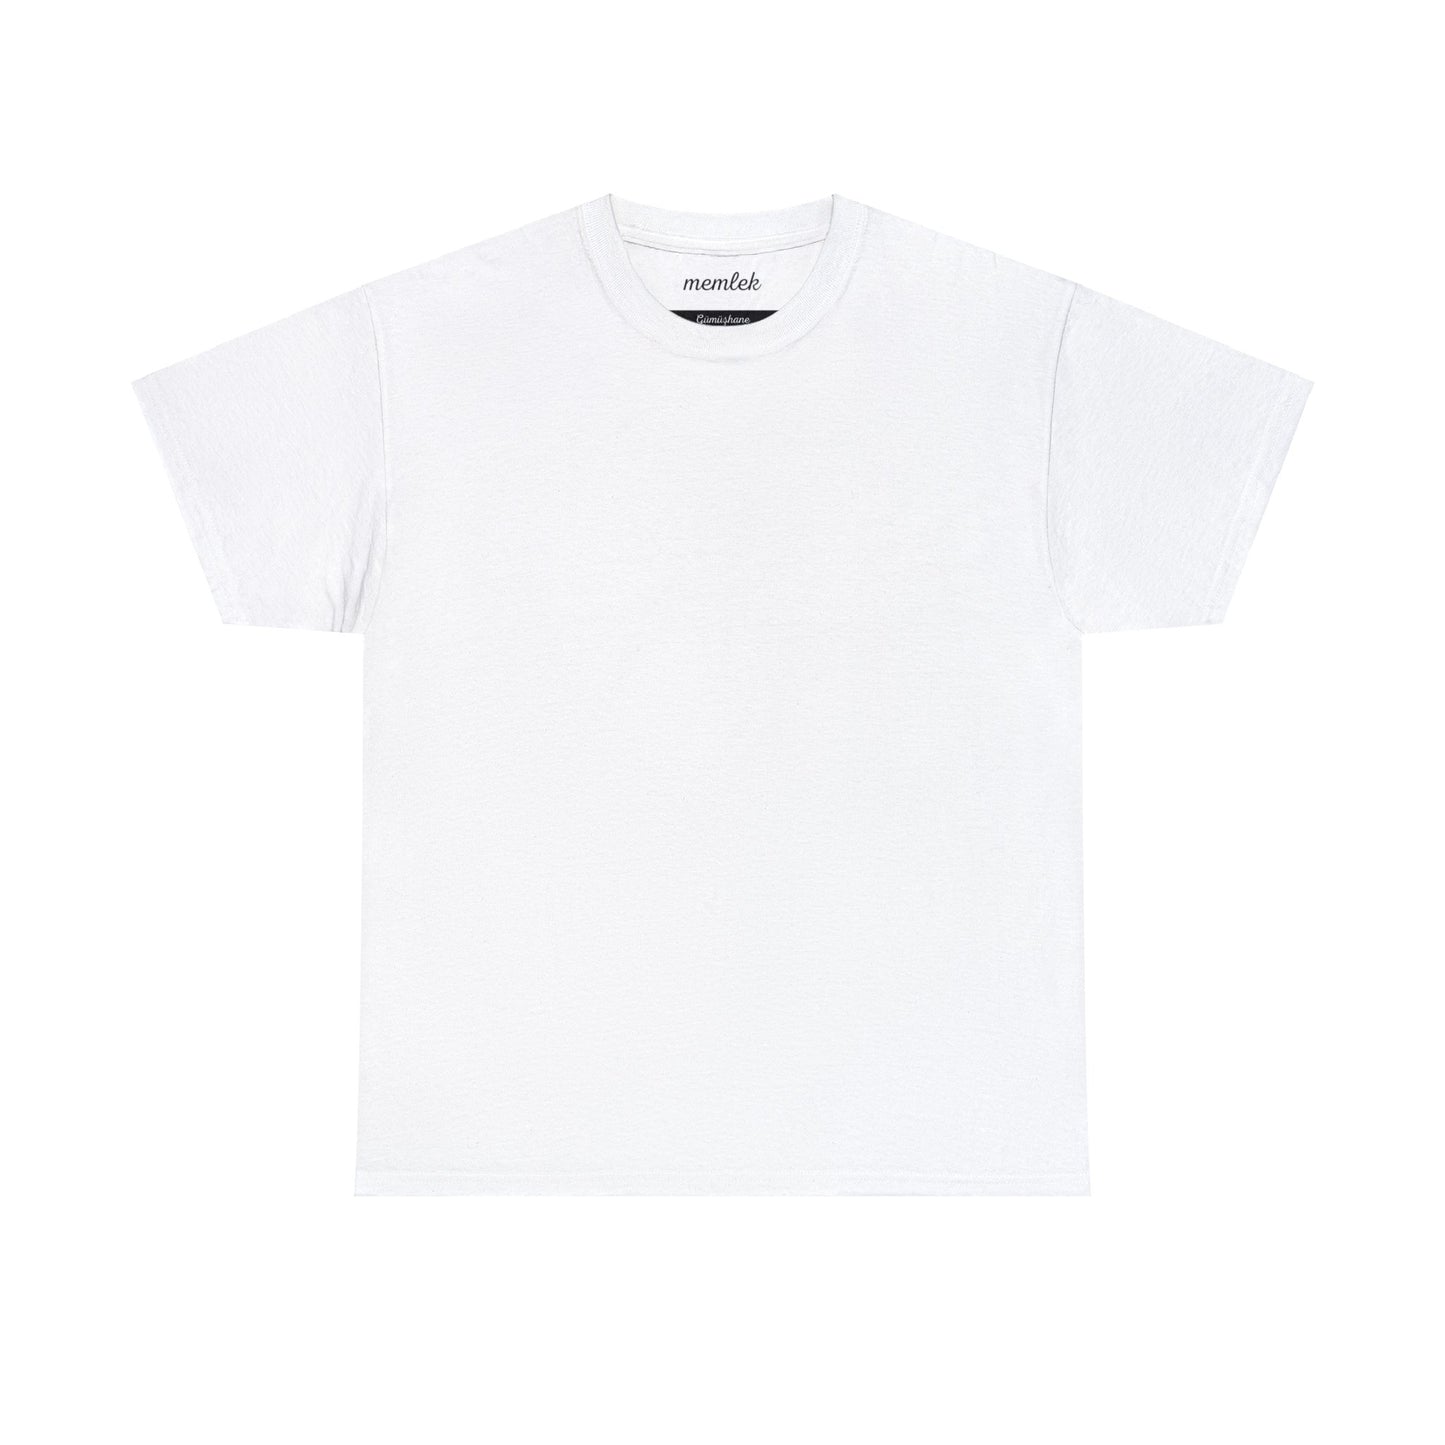 Kurt - 29 Gümüşhane - T-Shirt - Back Print - Black/White